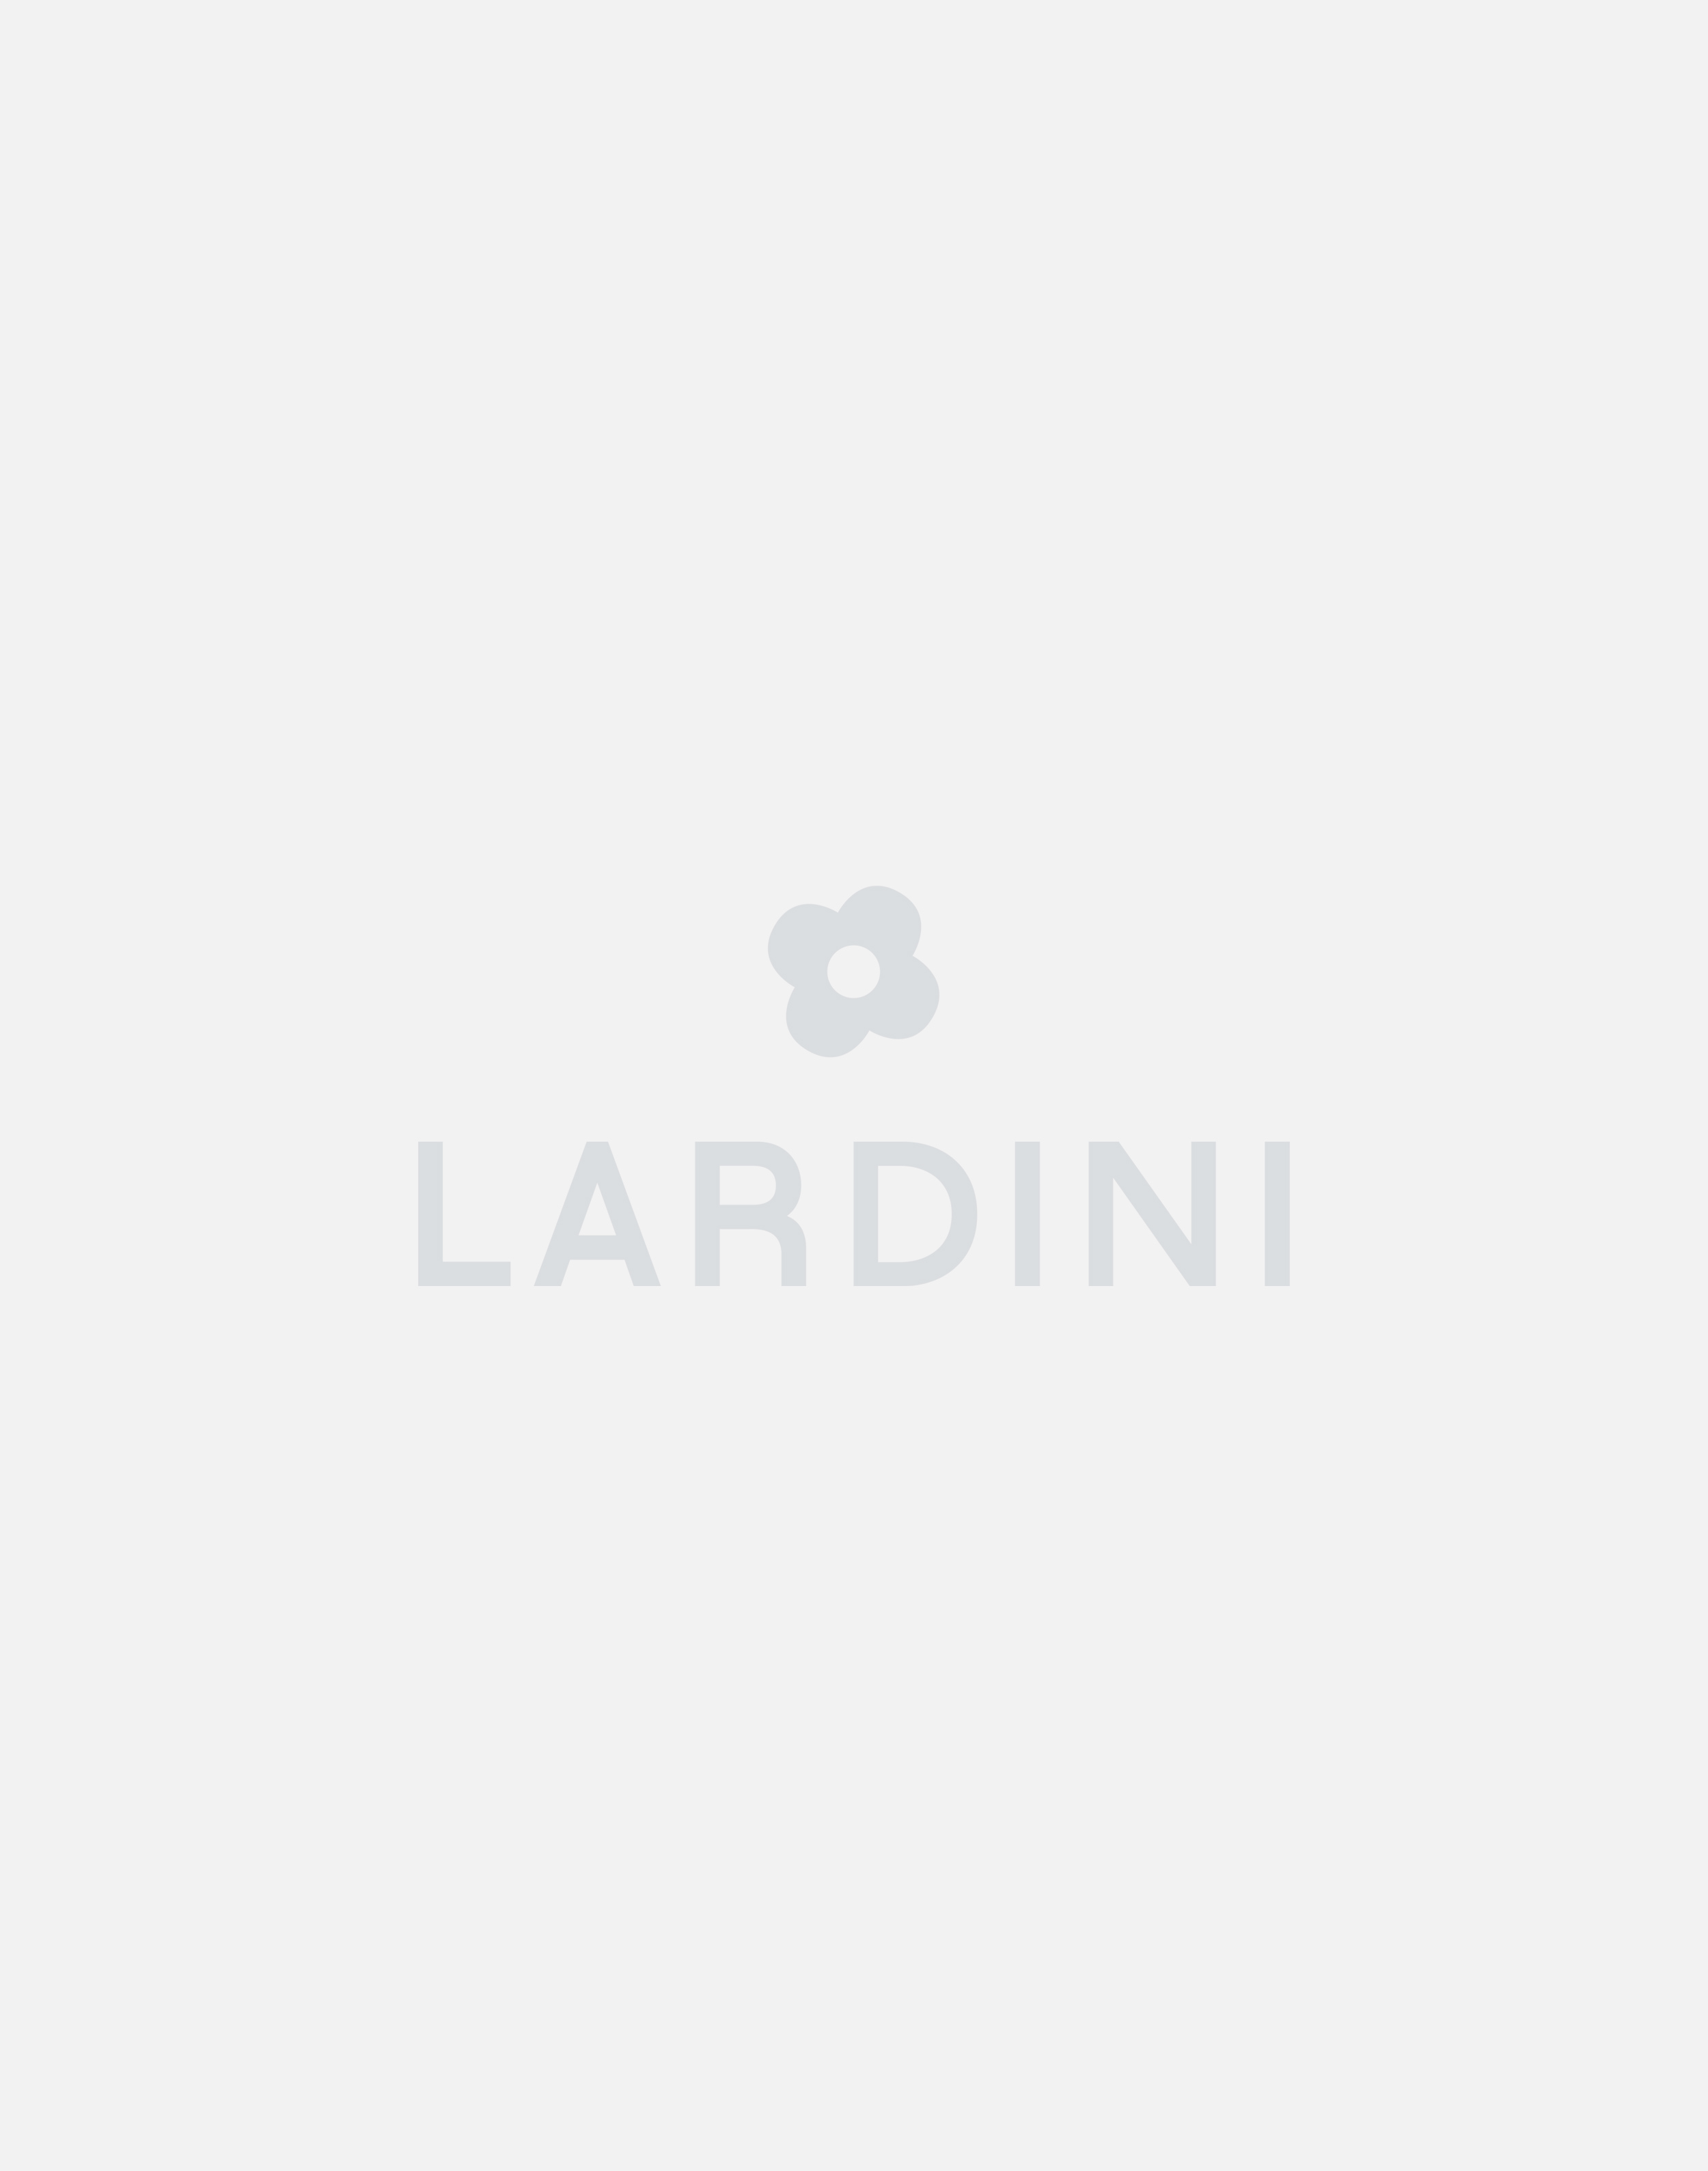 White cotton and linen cardigan - Luigi Lardini capsule 4